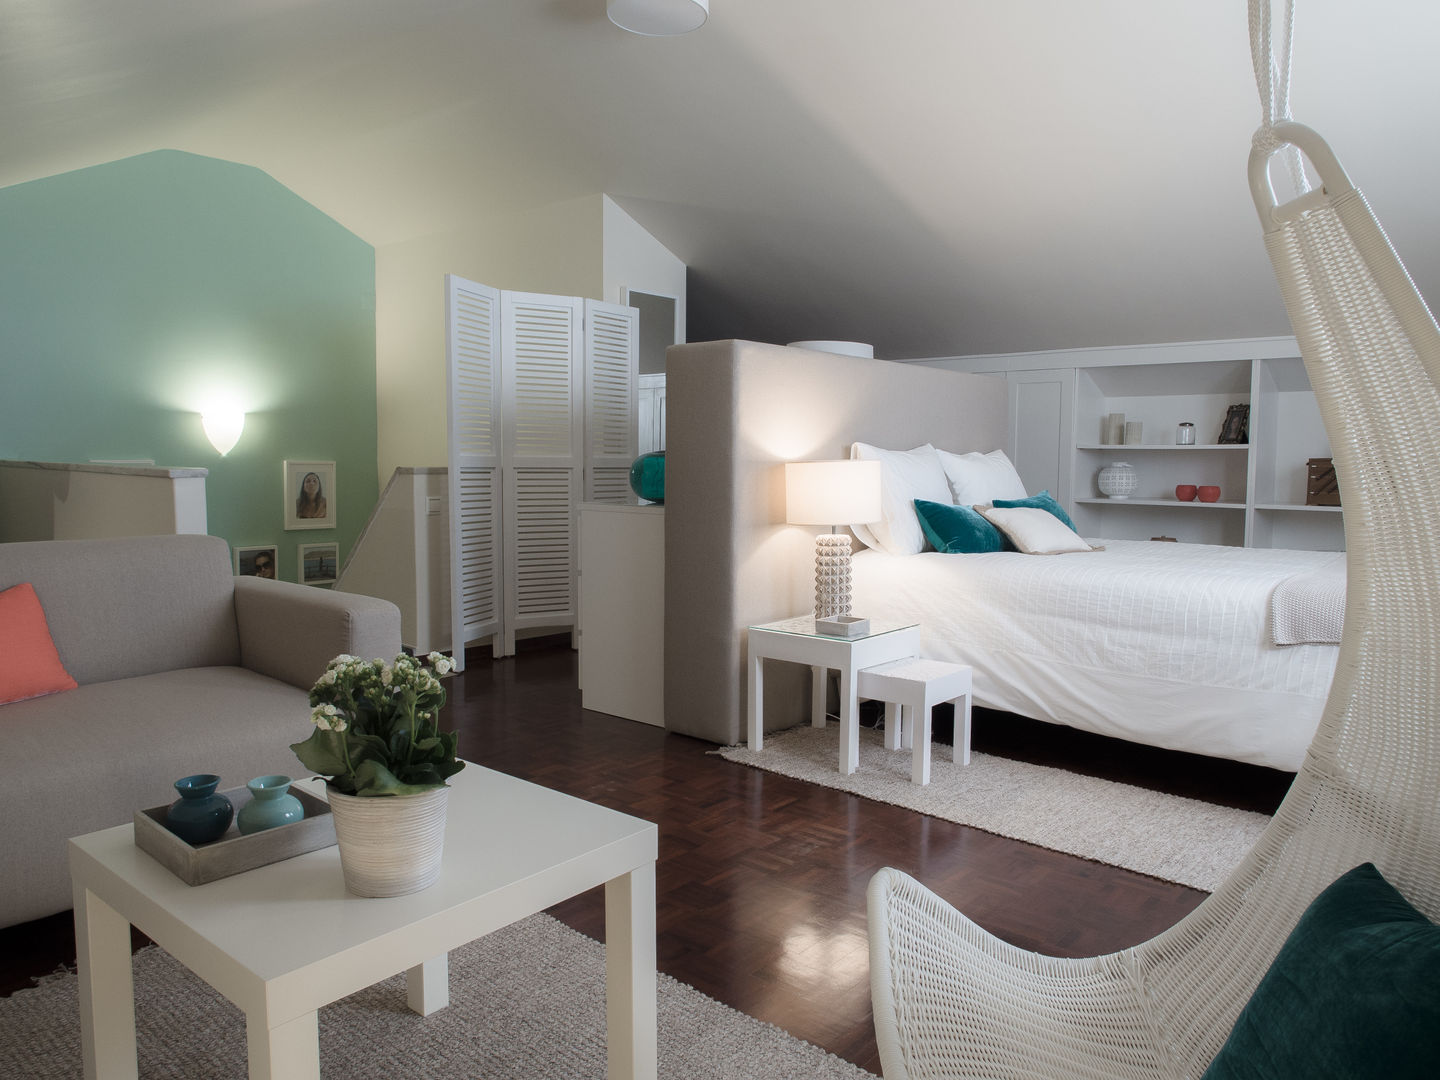 DP Bedroom - Sintra, MUDA Home Design MUDA Home Design 臥室